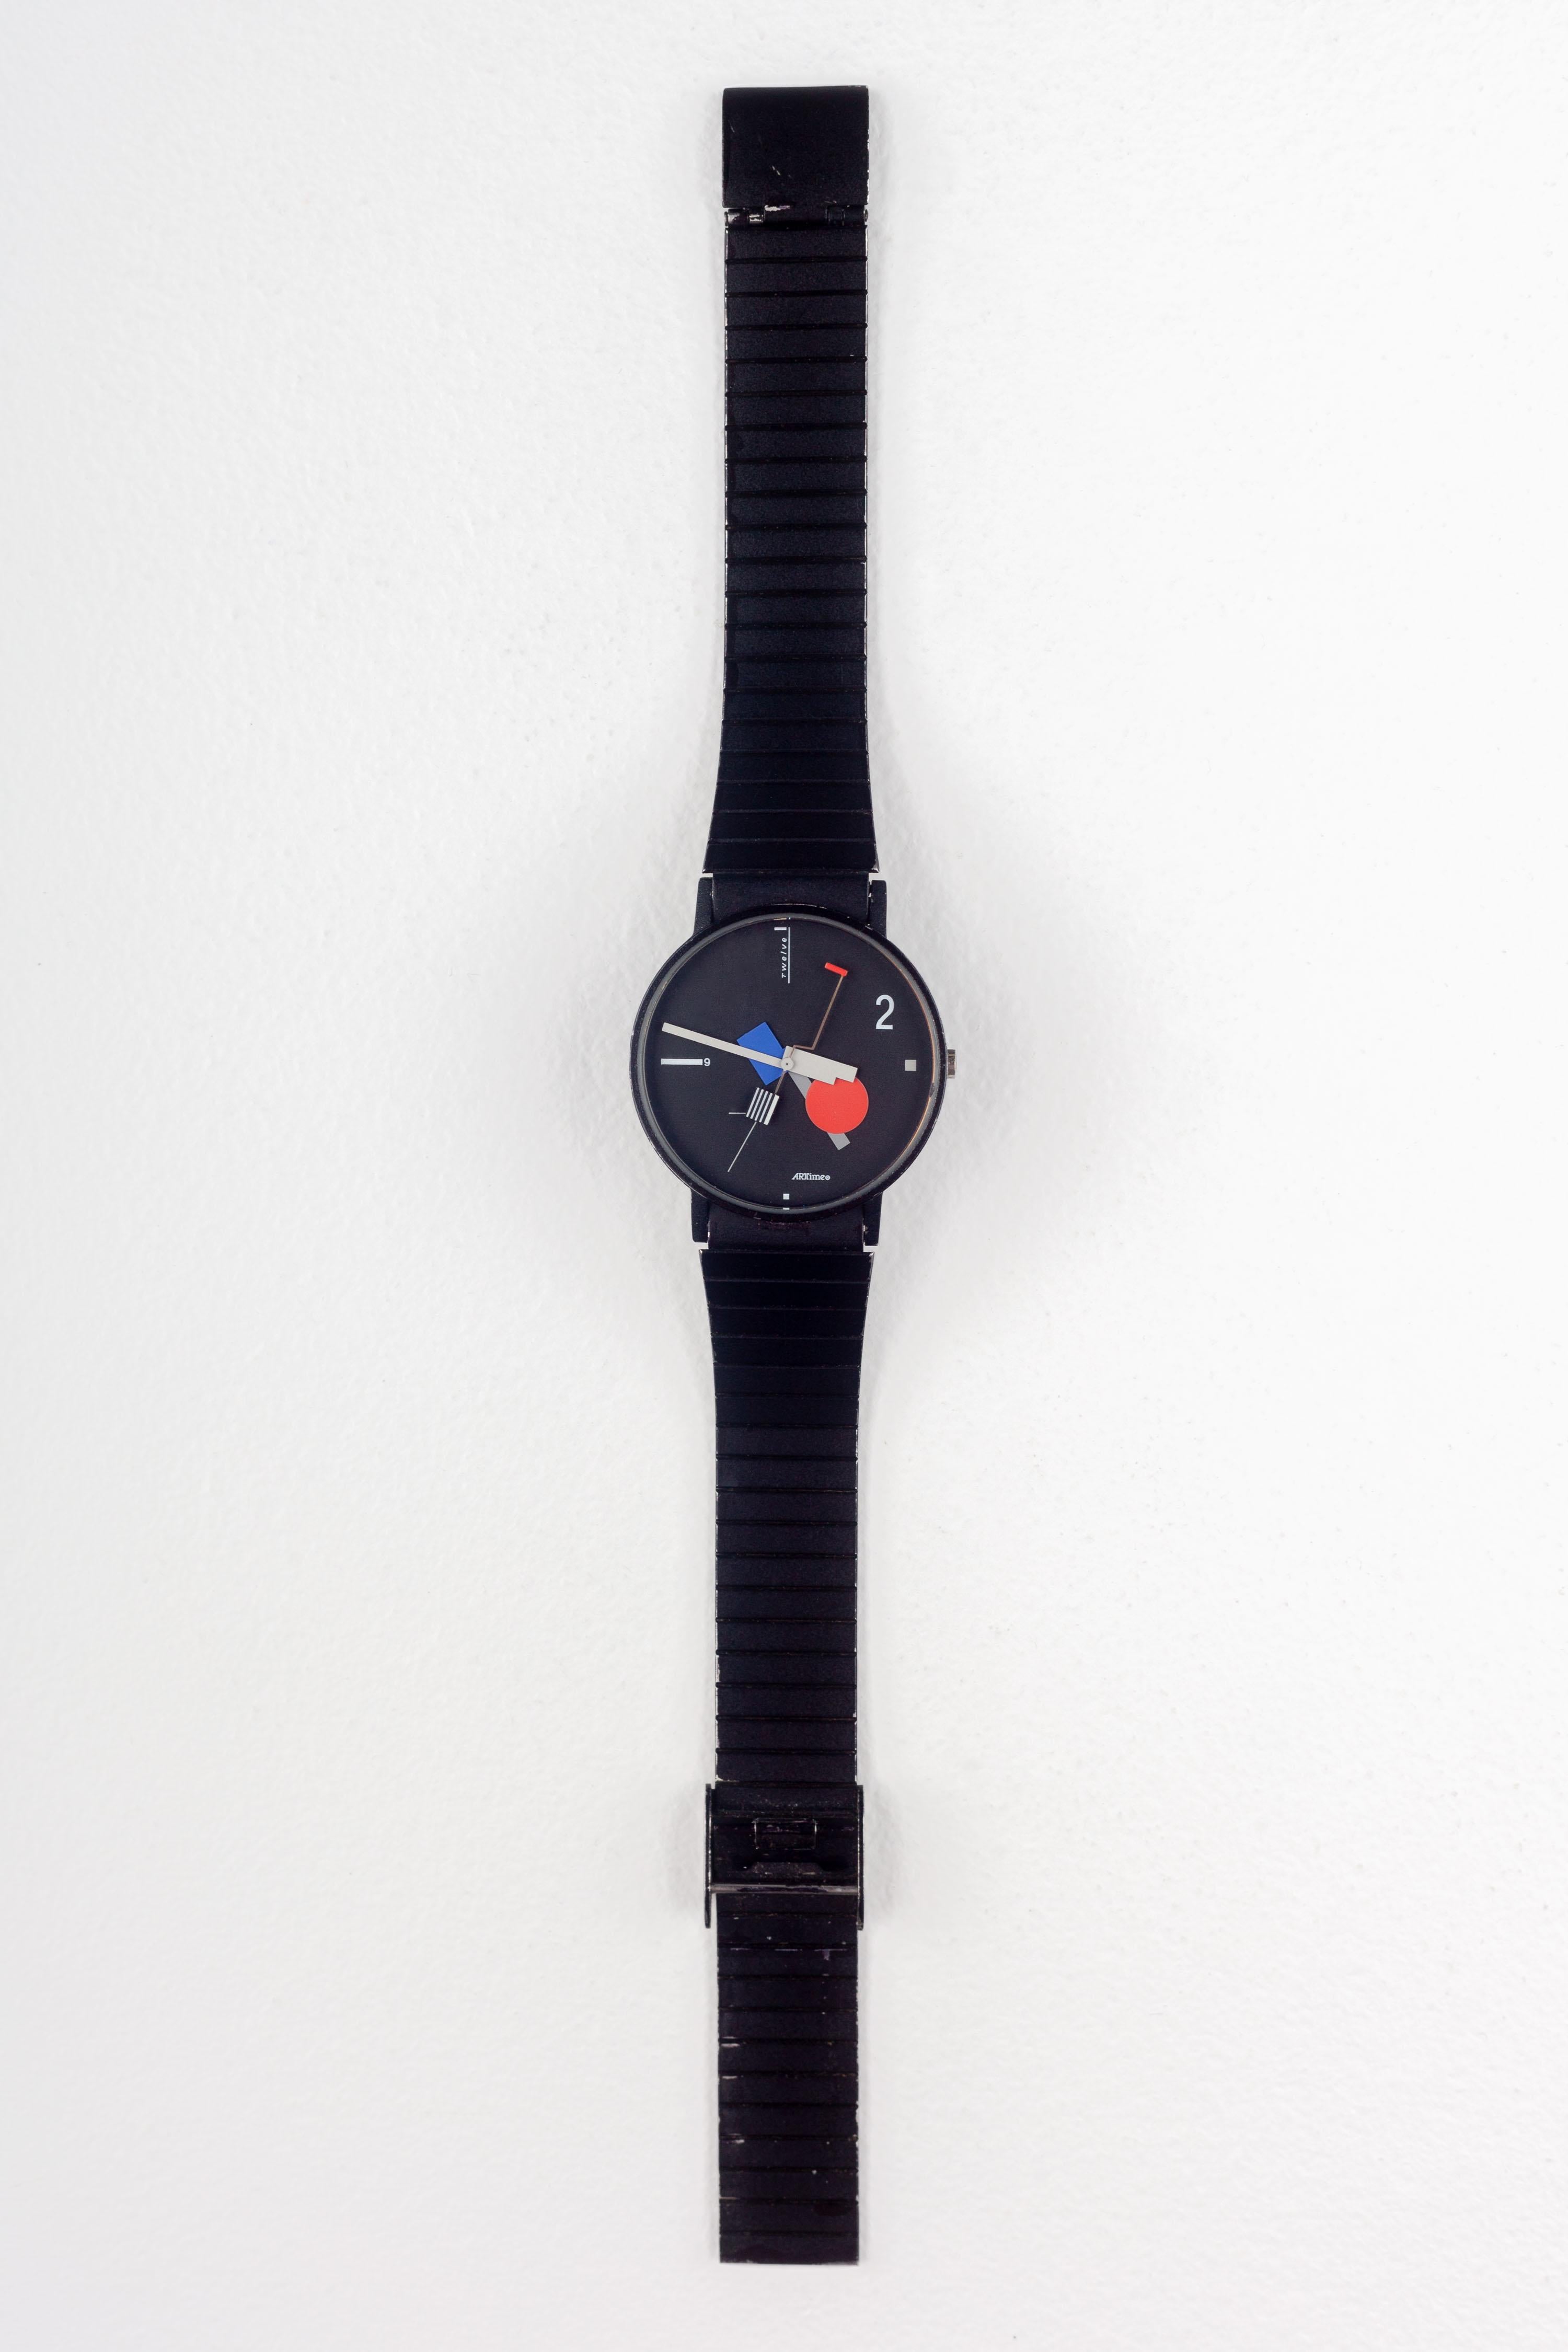 Fin du 20e siècle Montre-bracelet postmoderne Memphis de Nicolai Canetti pour Artime, 1986, fabrication suisse en vente